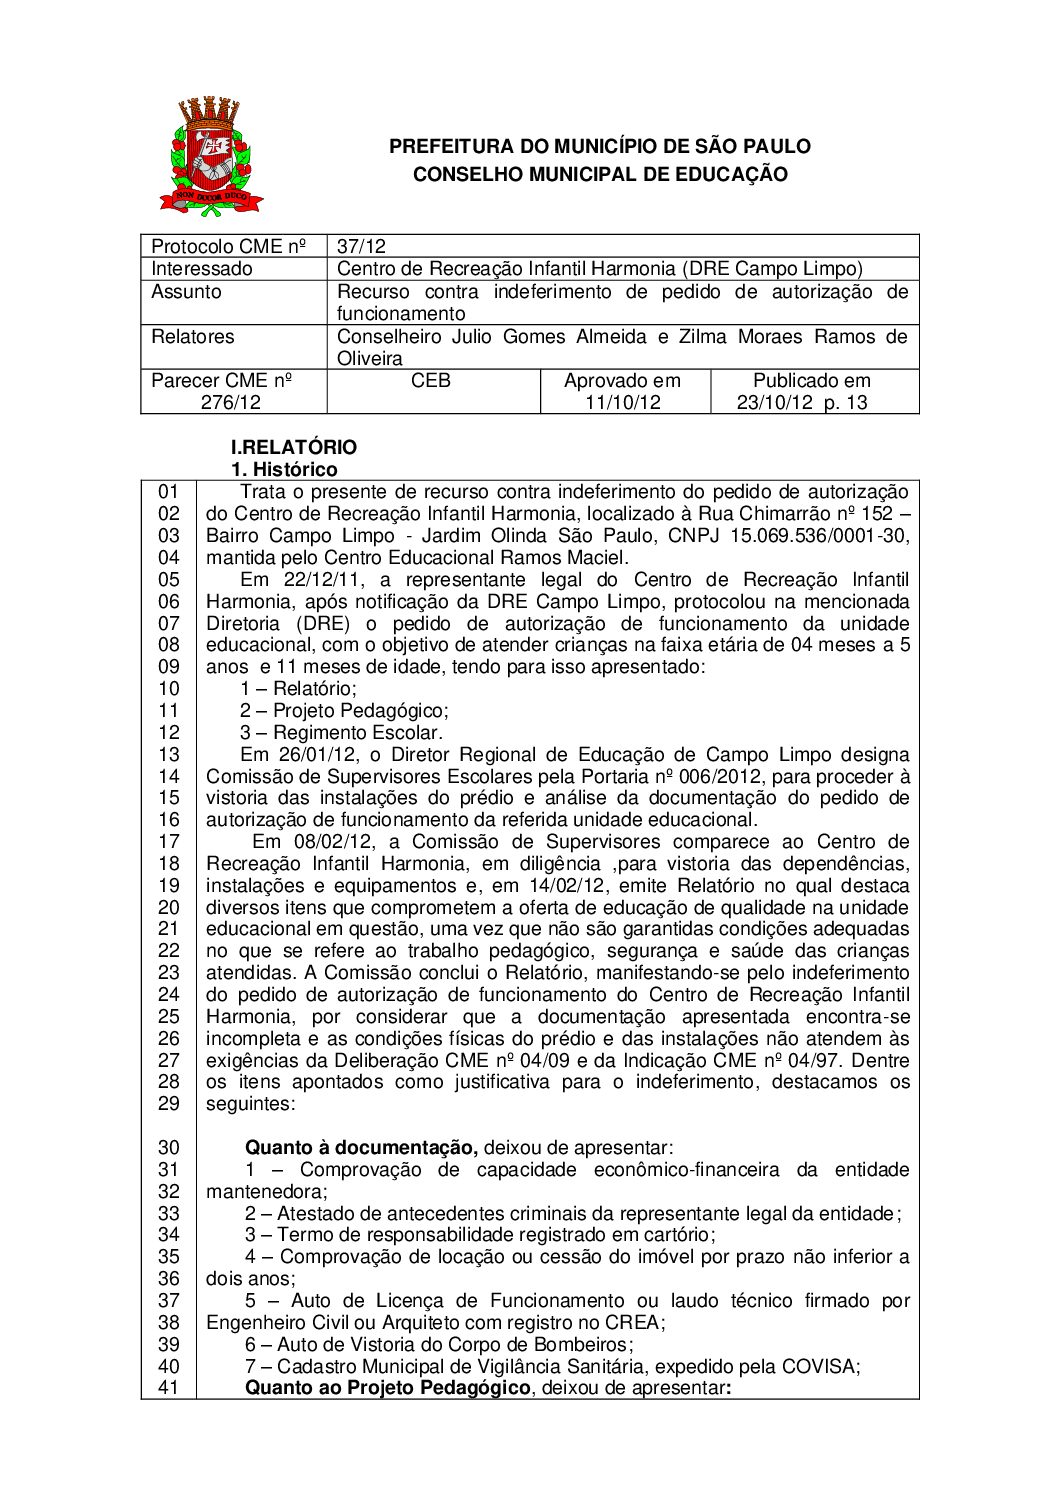 Parecer CME nº 276/2012 - Centro de Recreação Infantil Harmonia (DRE Campo Limpo) - Recurso contra indeferimento de pedido de autorização de funcionamento 